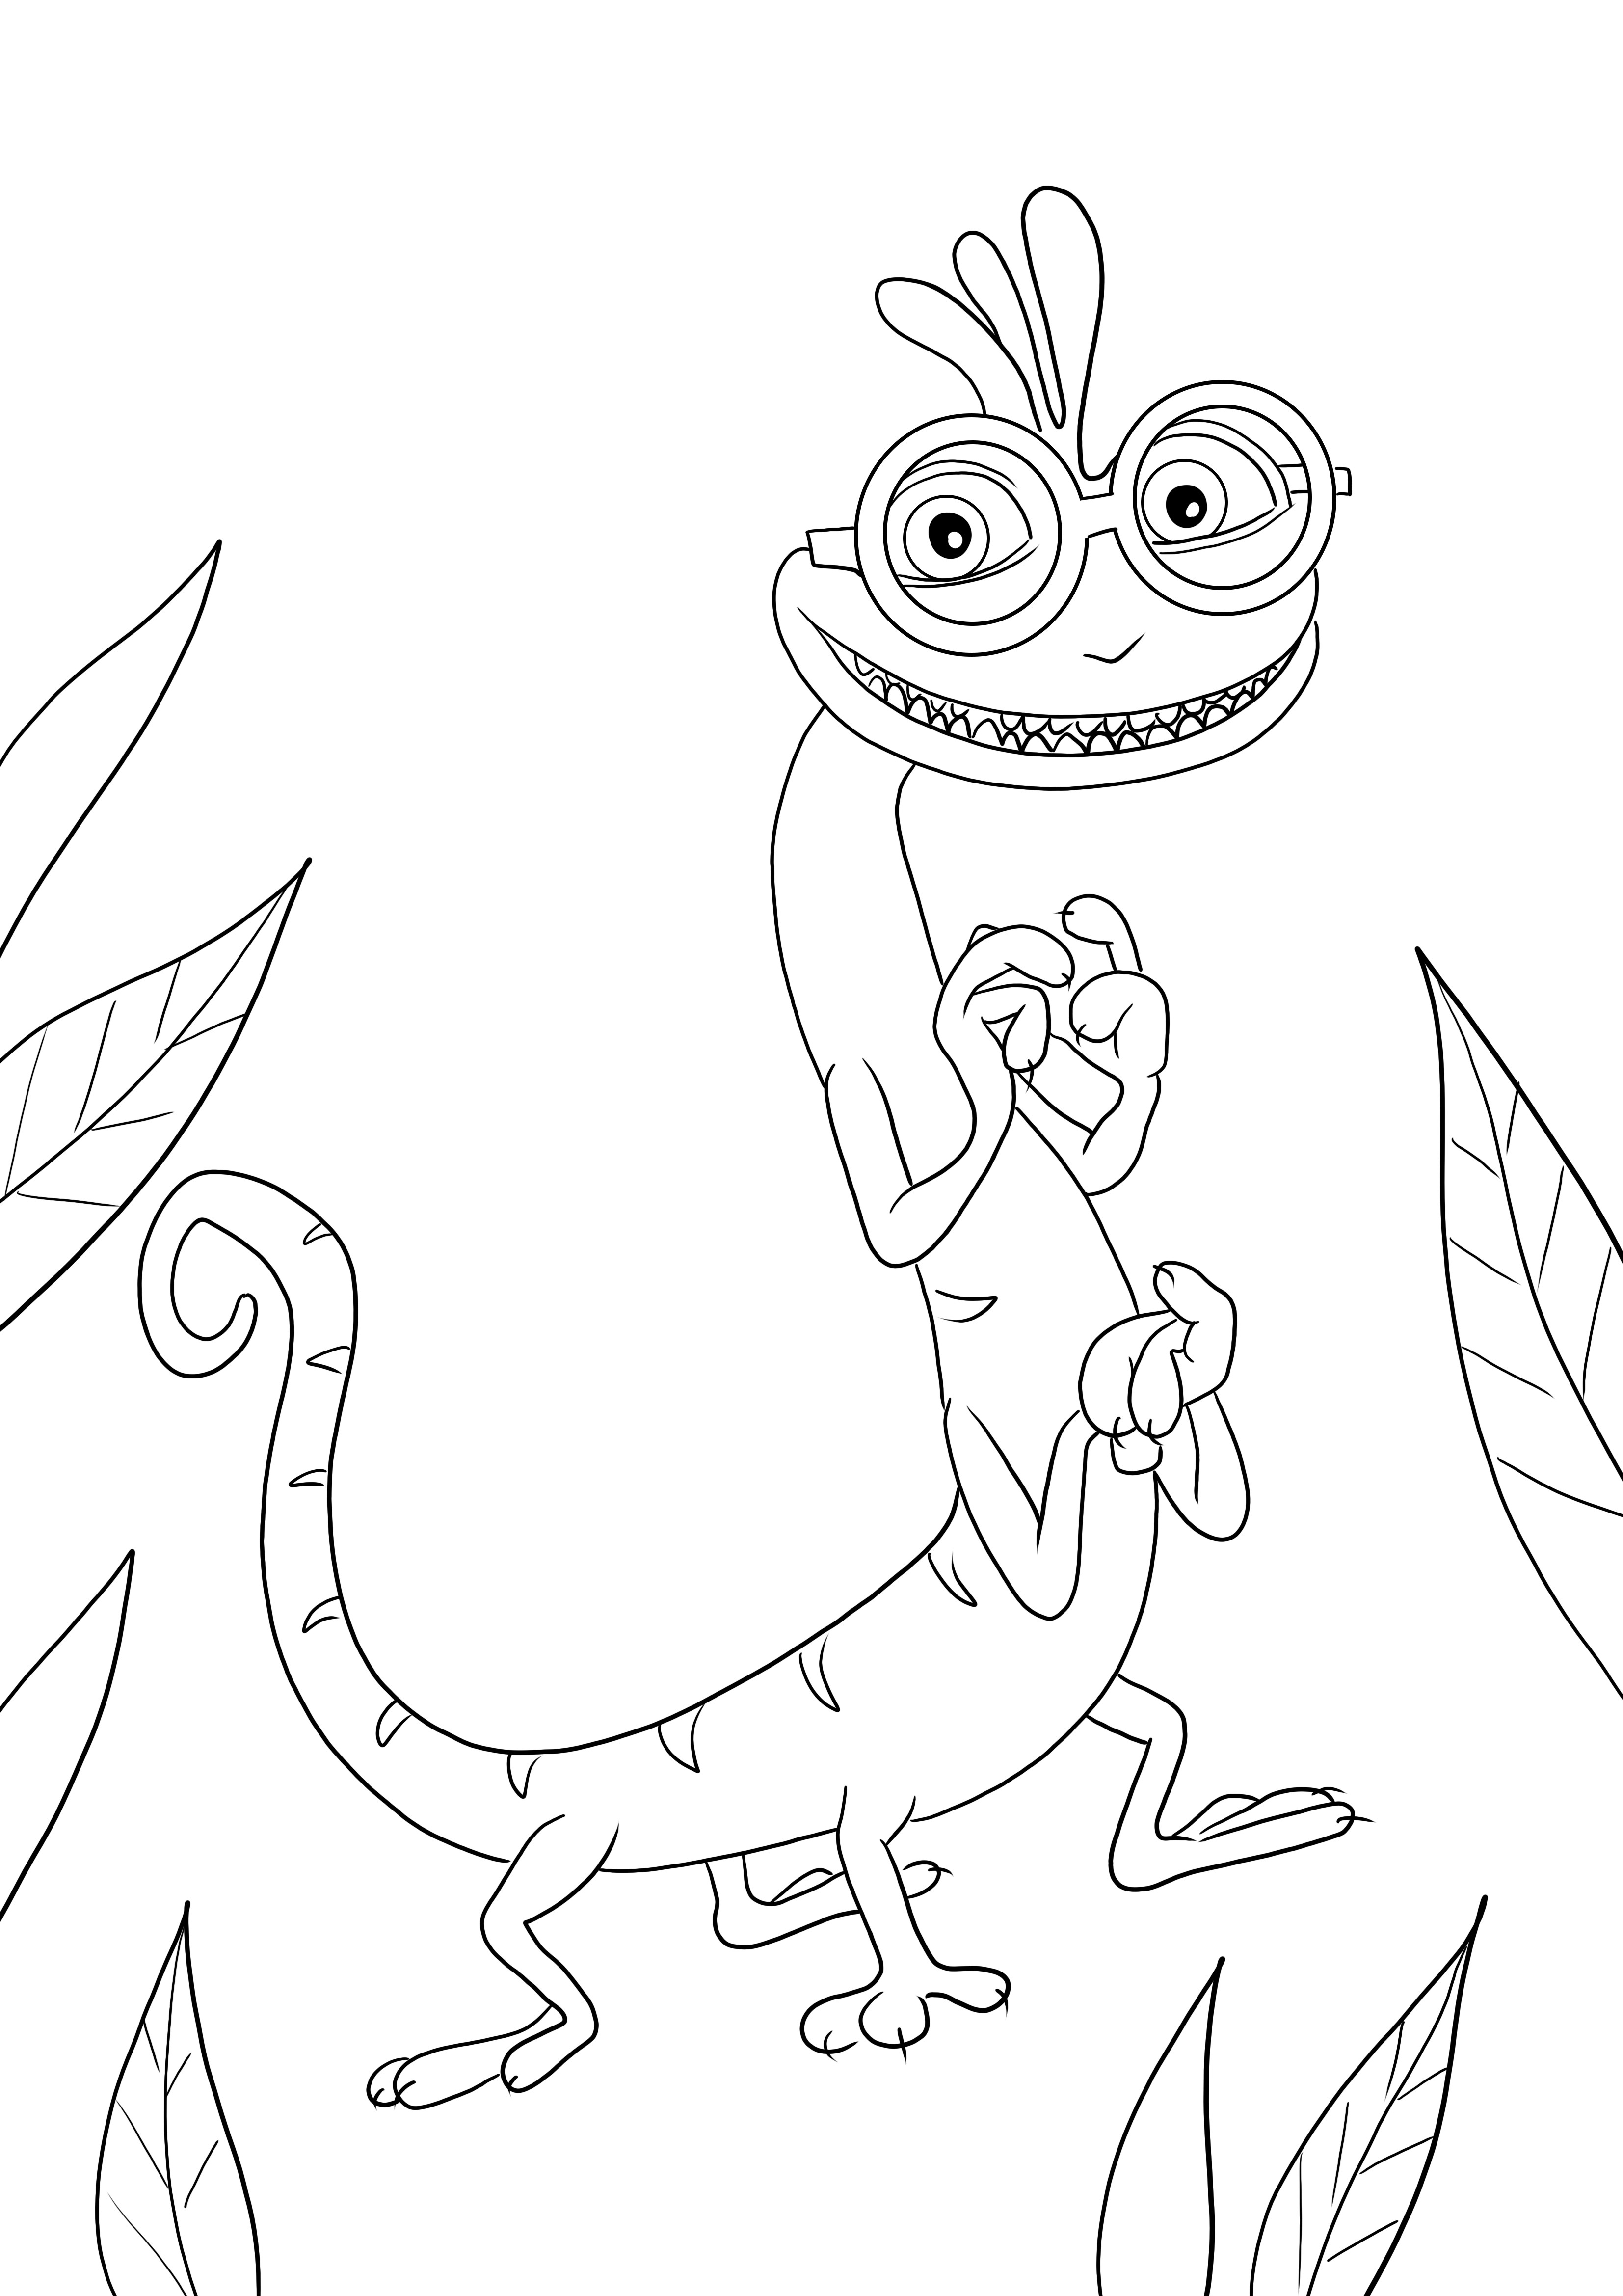 Fácil colorir e baixar a imagem do filme Randall Boggs da Monsters Inc